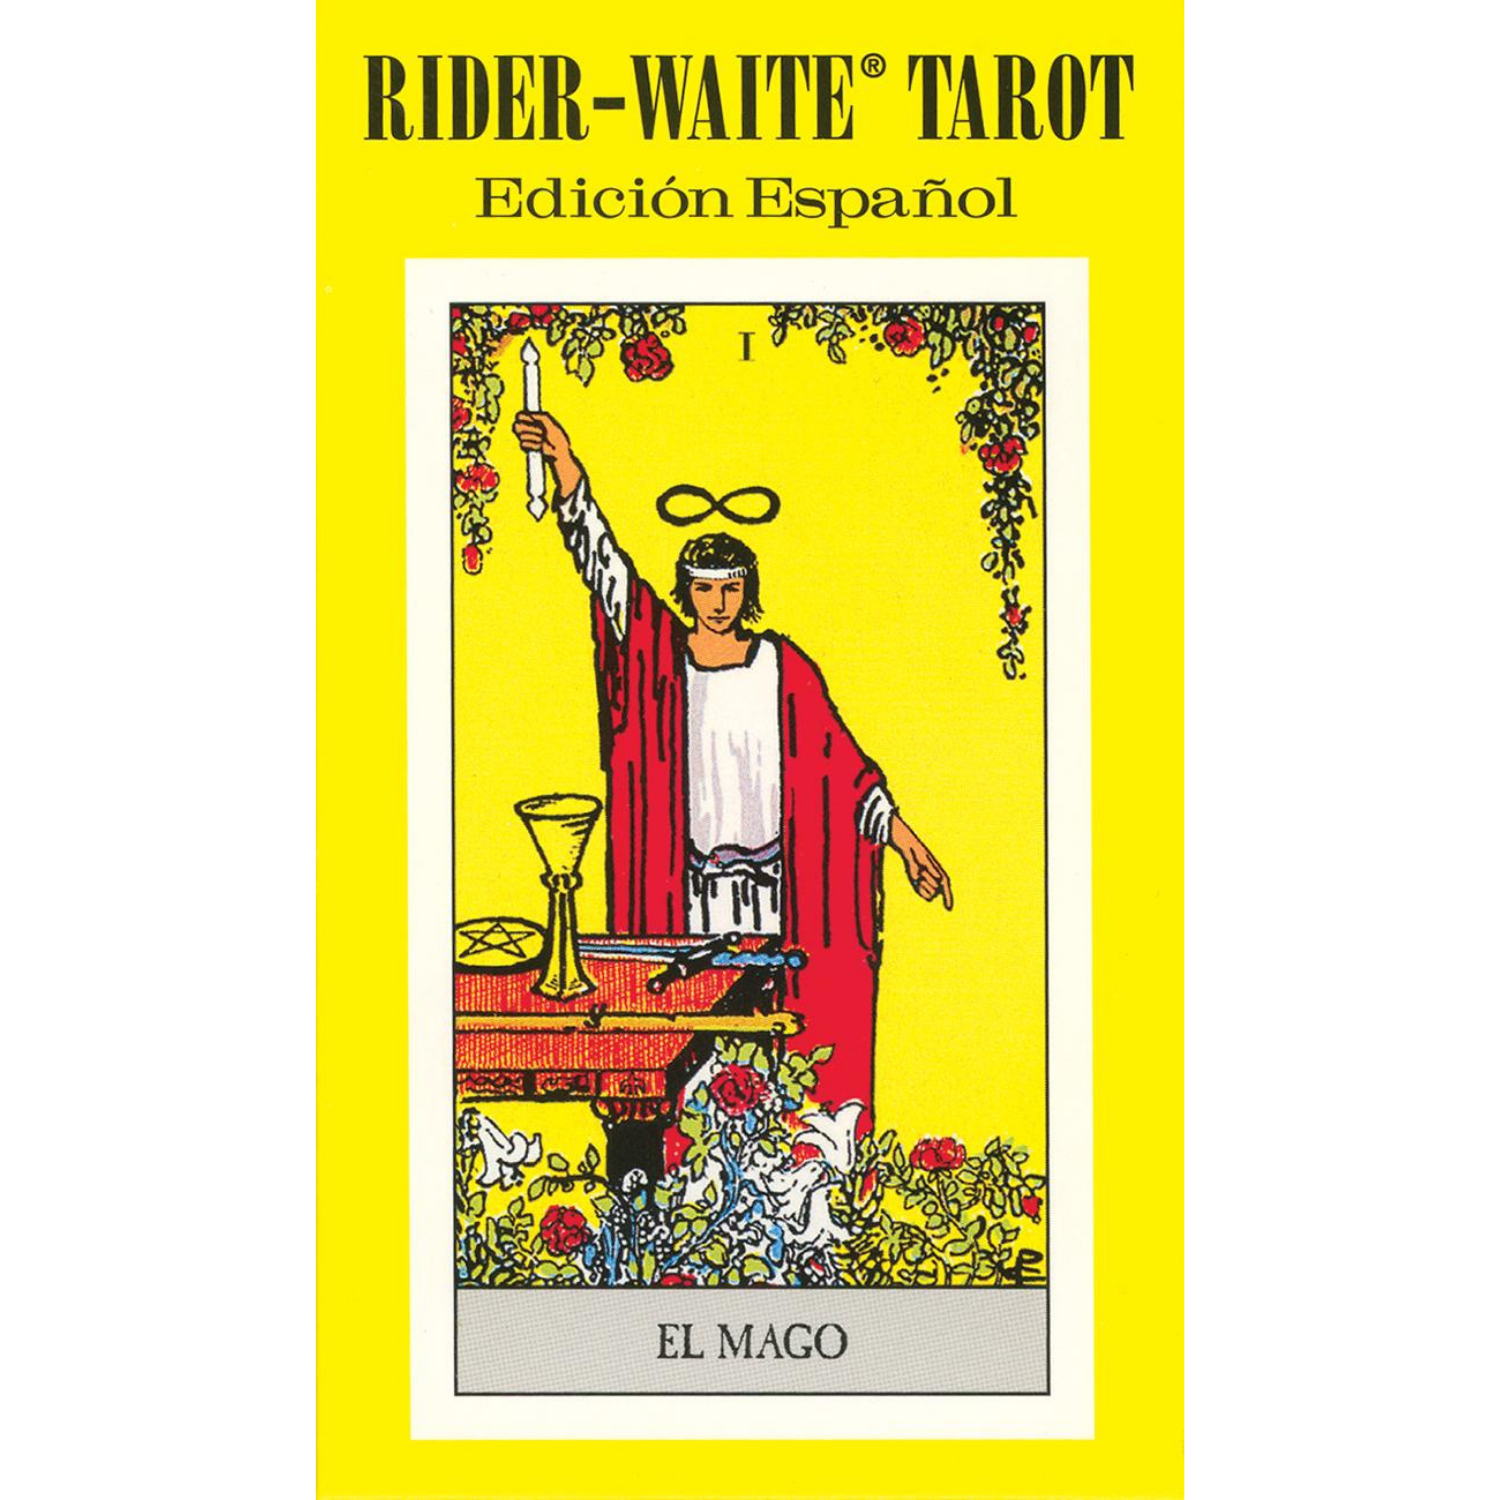 Spanish Rider-Waite® Tarot